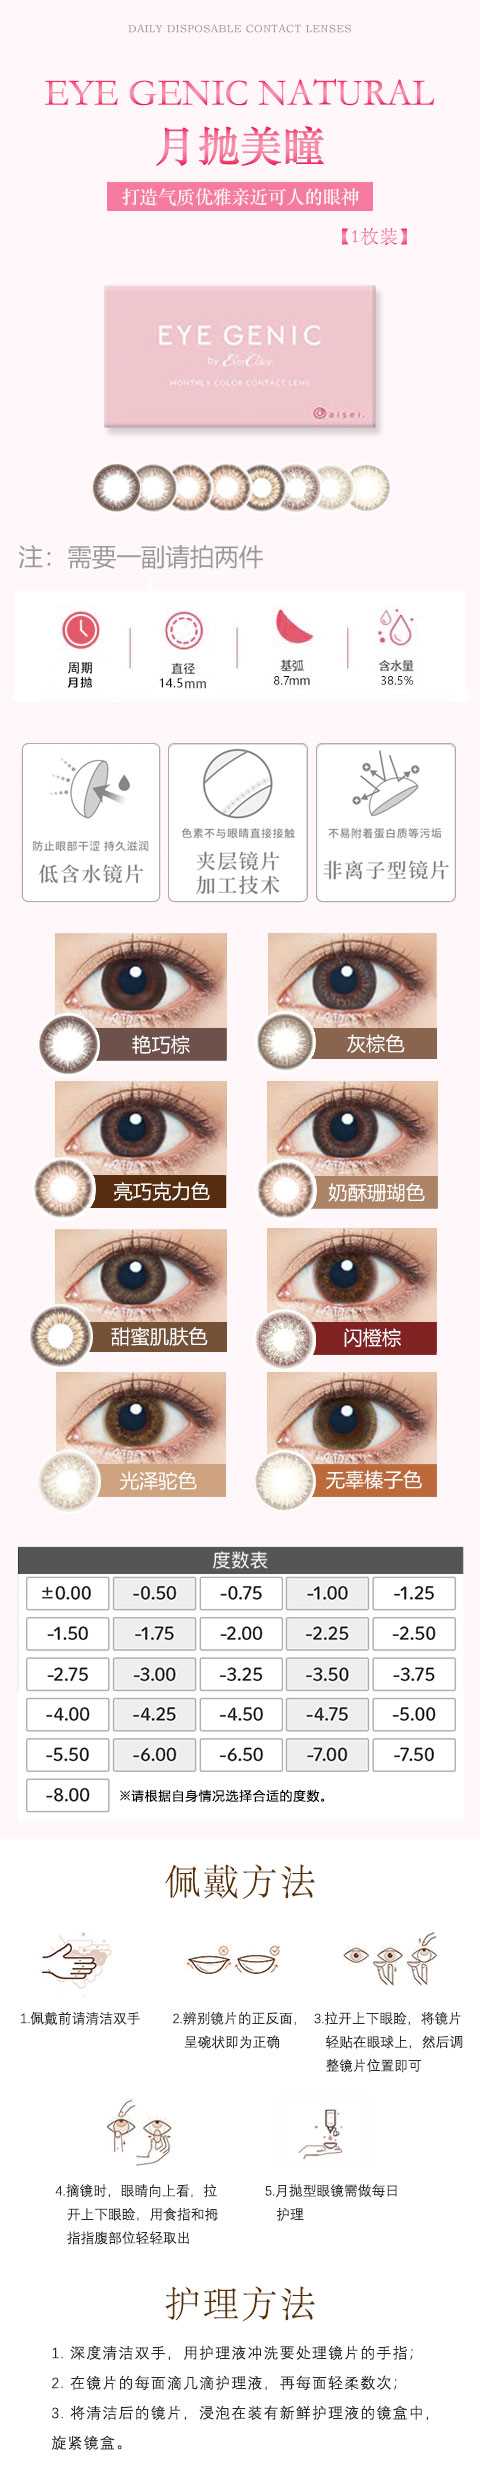 eye genic (3).jpg